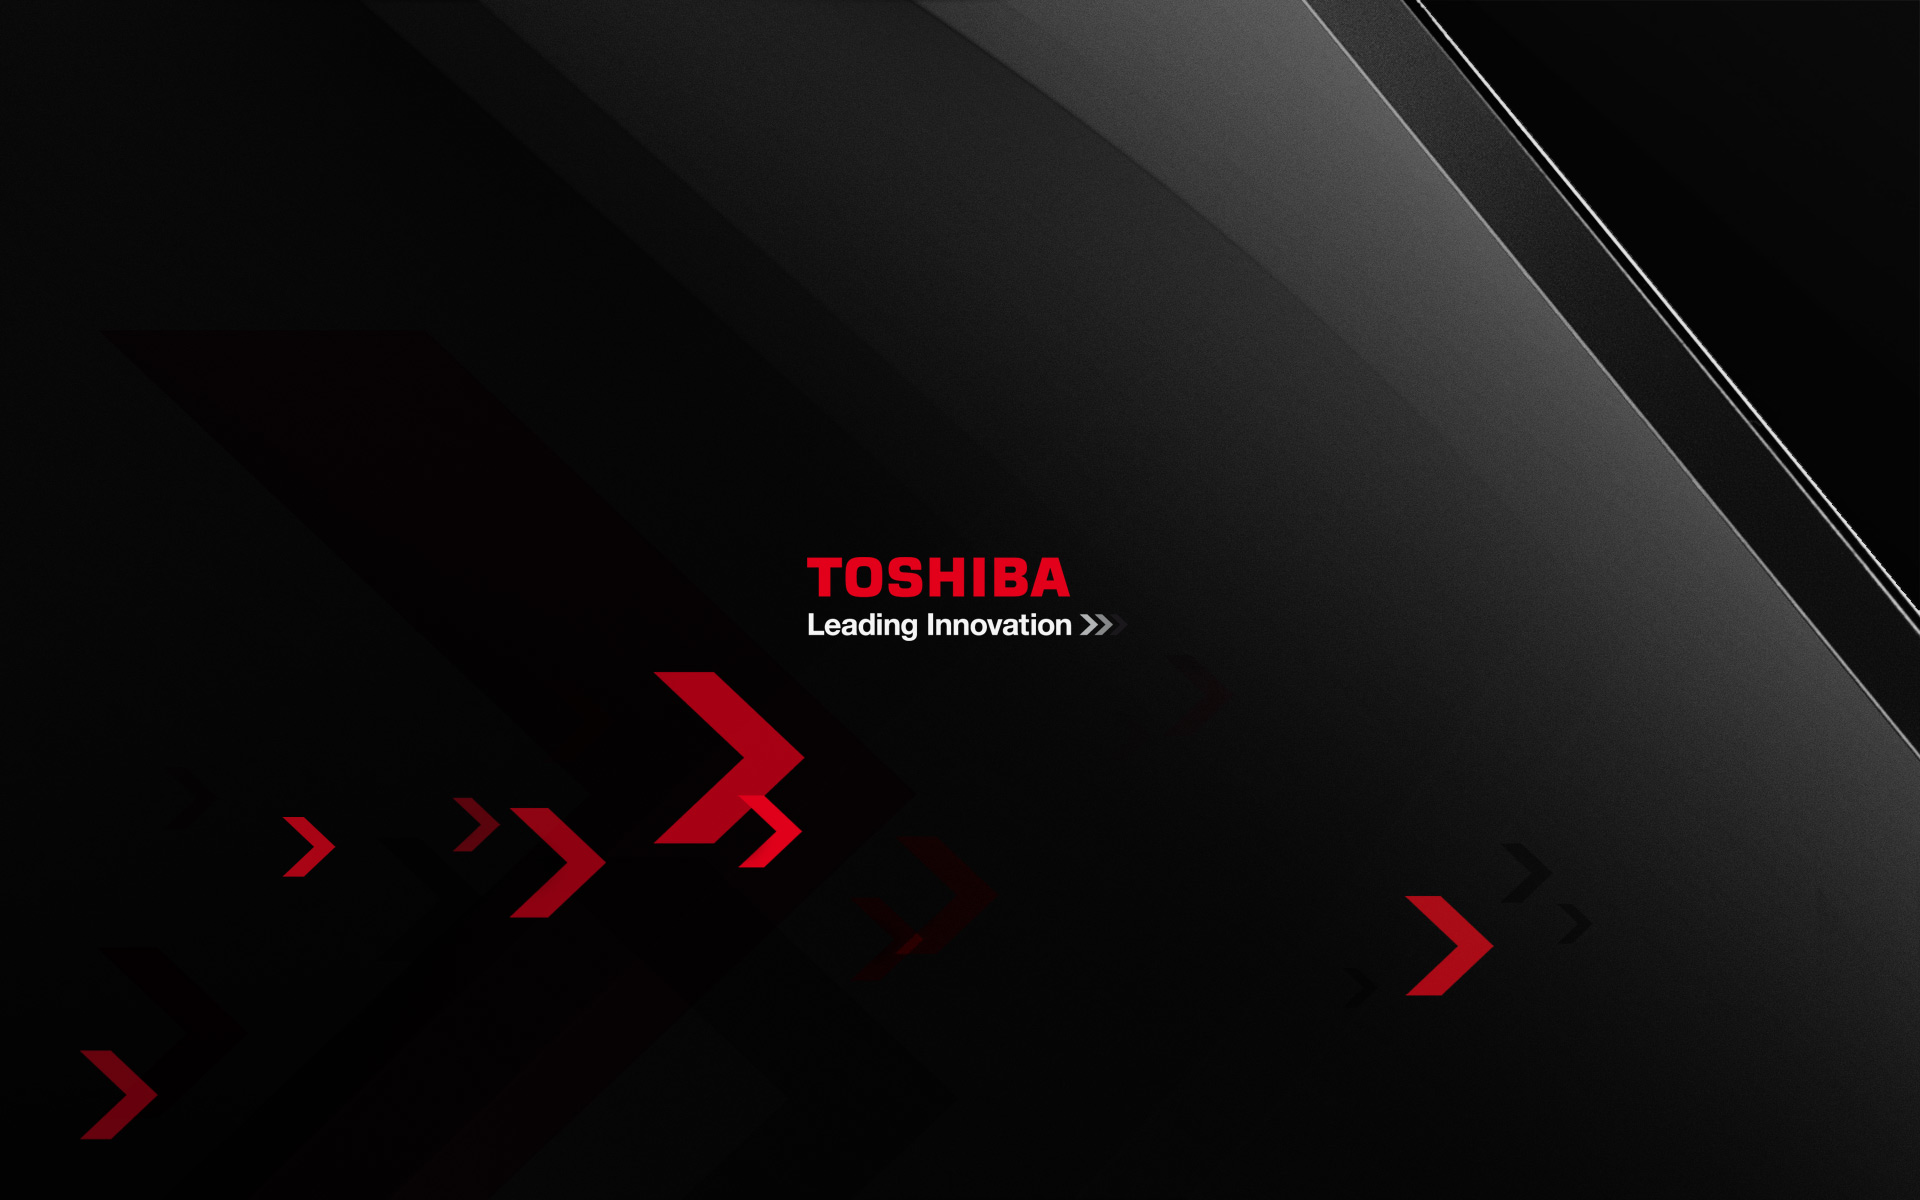 Toshiba Backgrounds